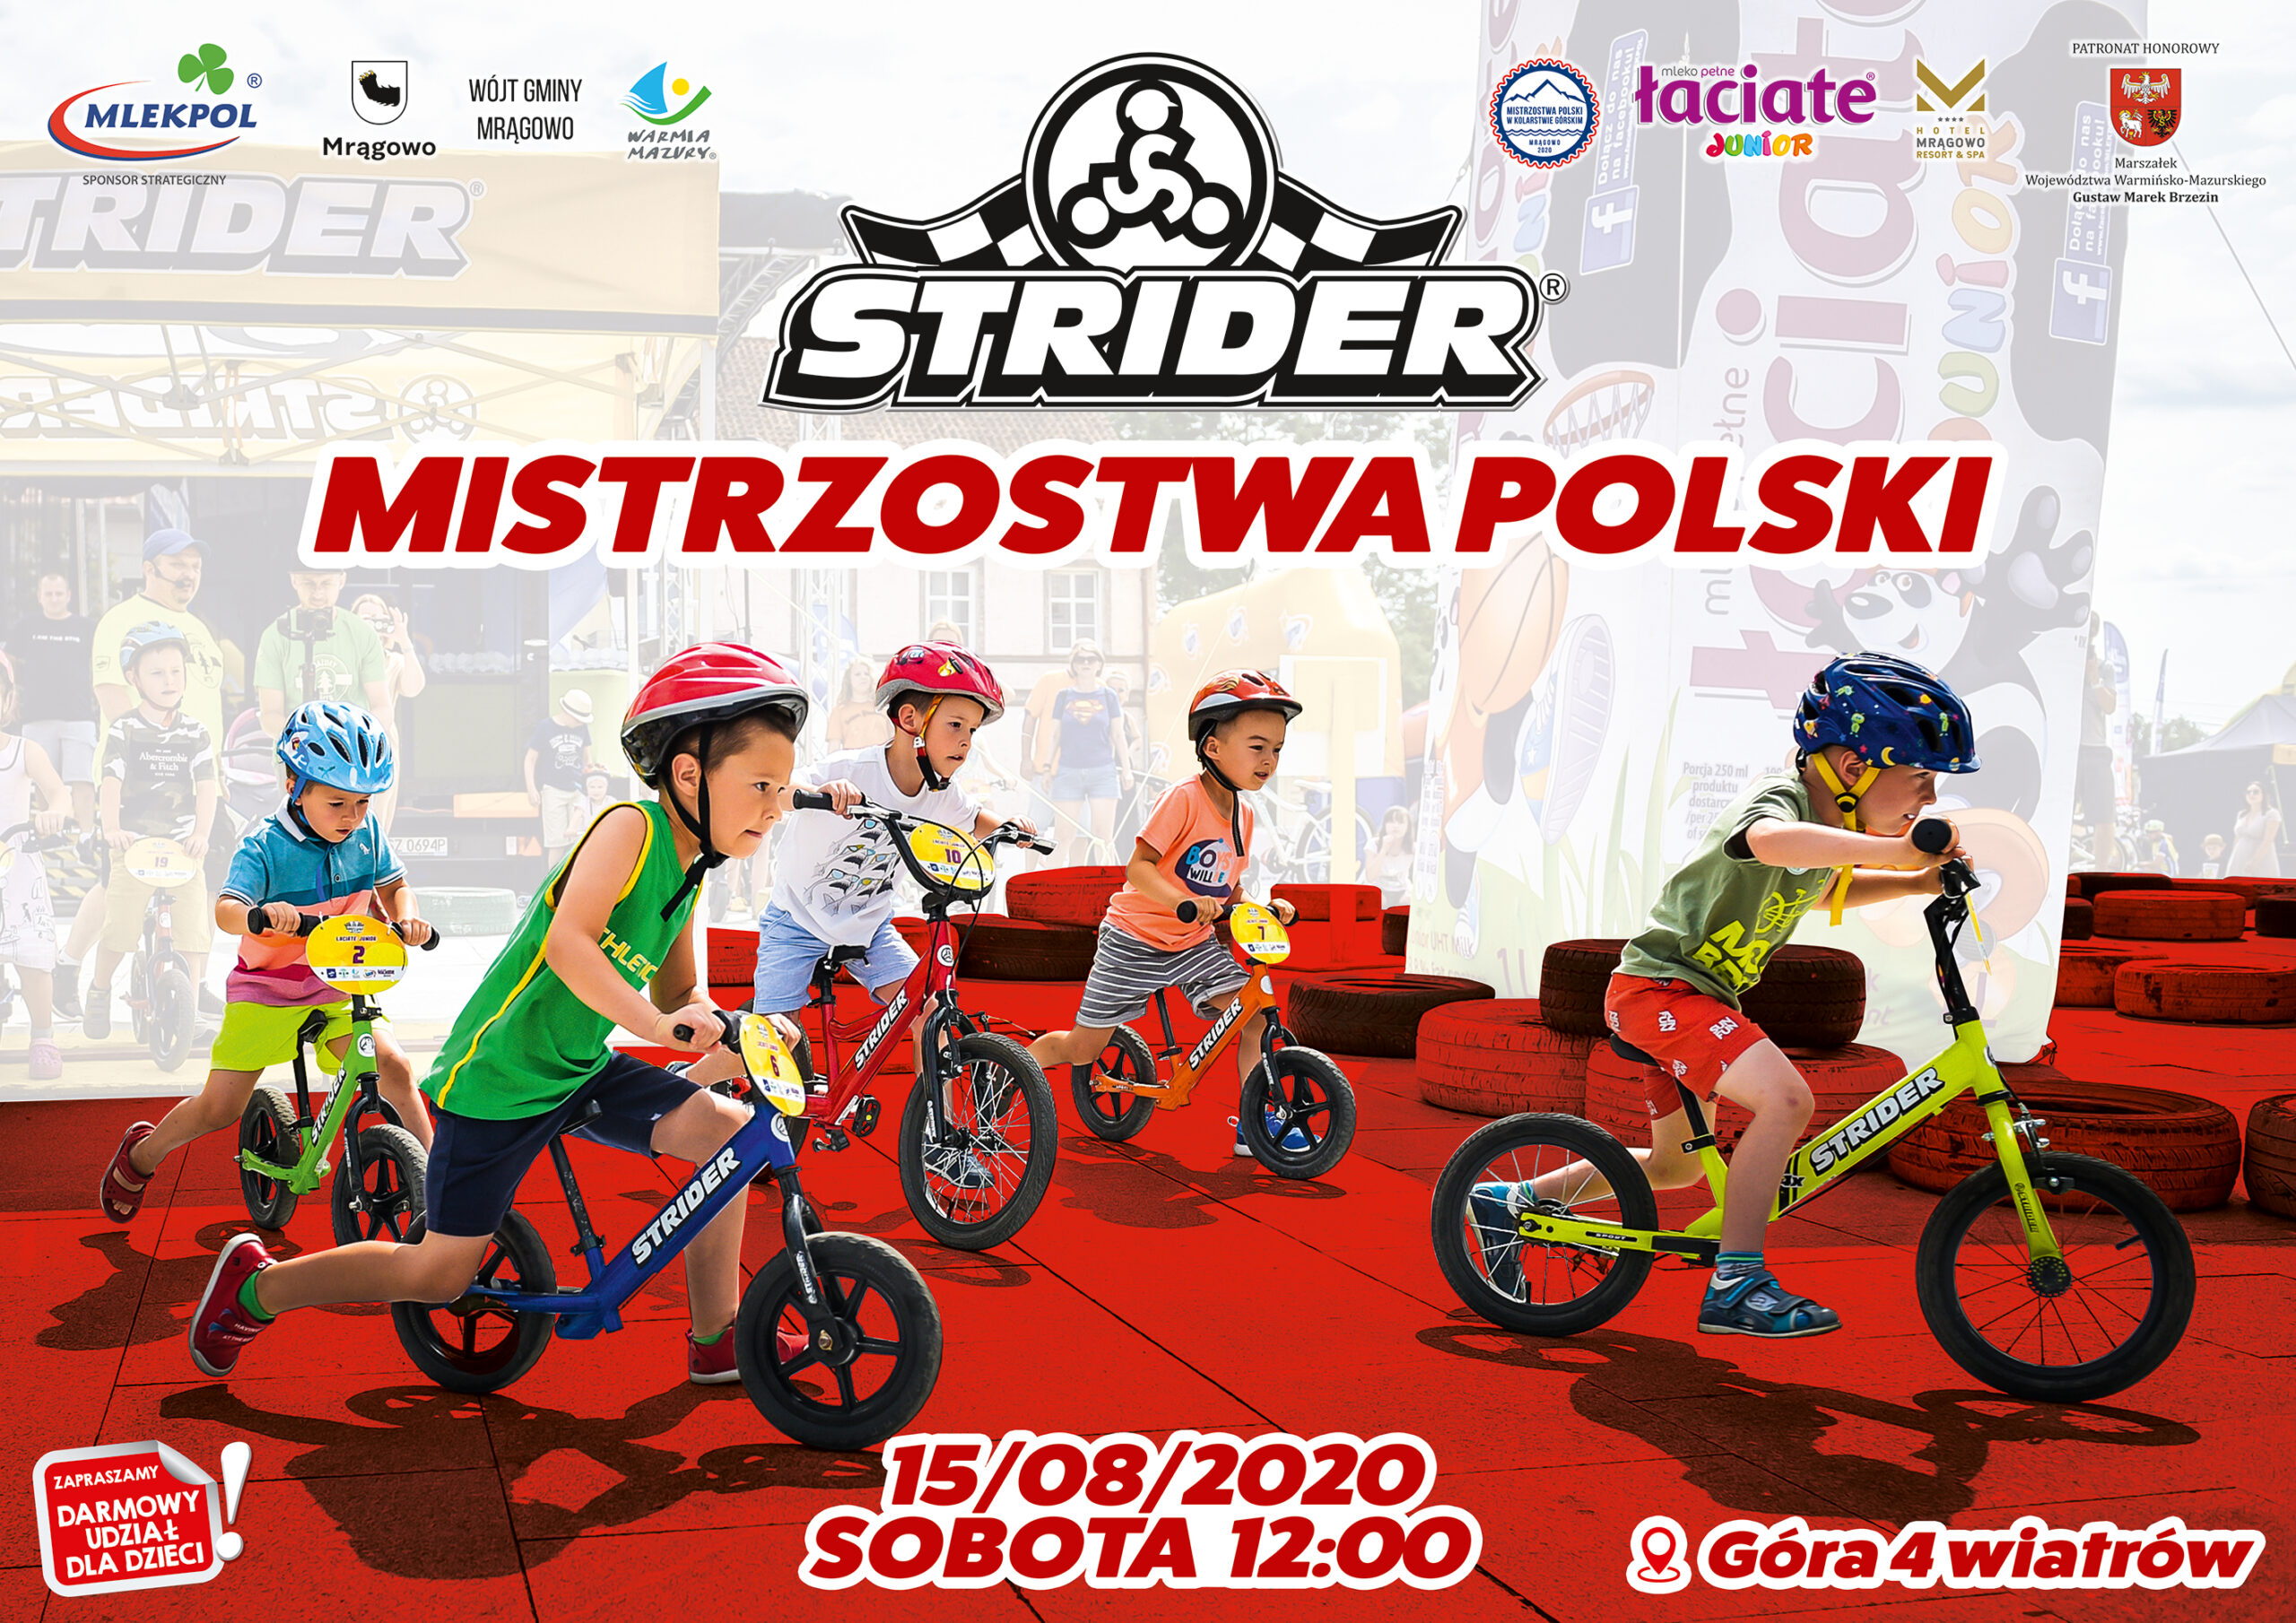 Mistrzostwa Polski Strider